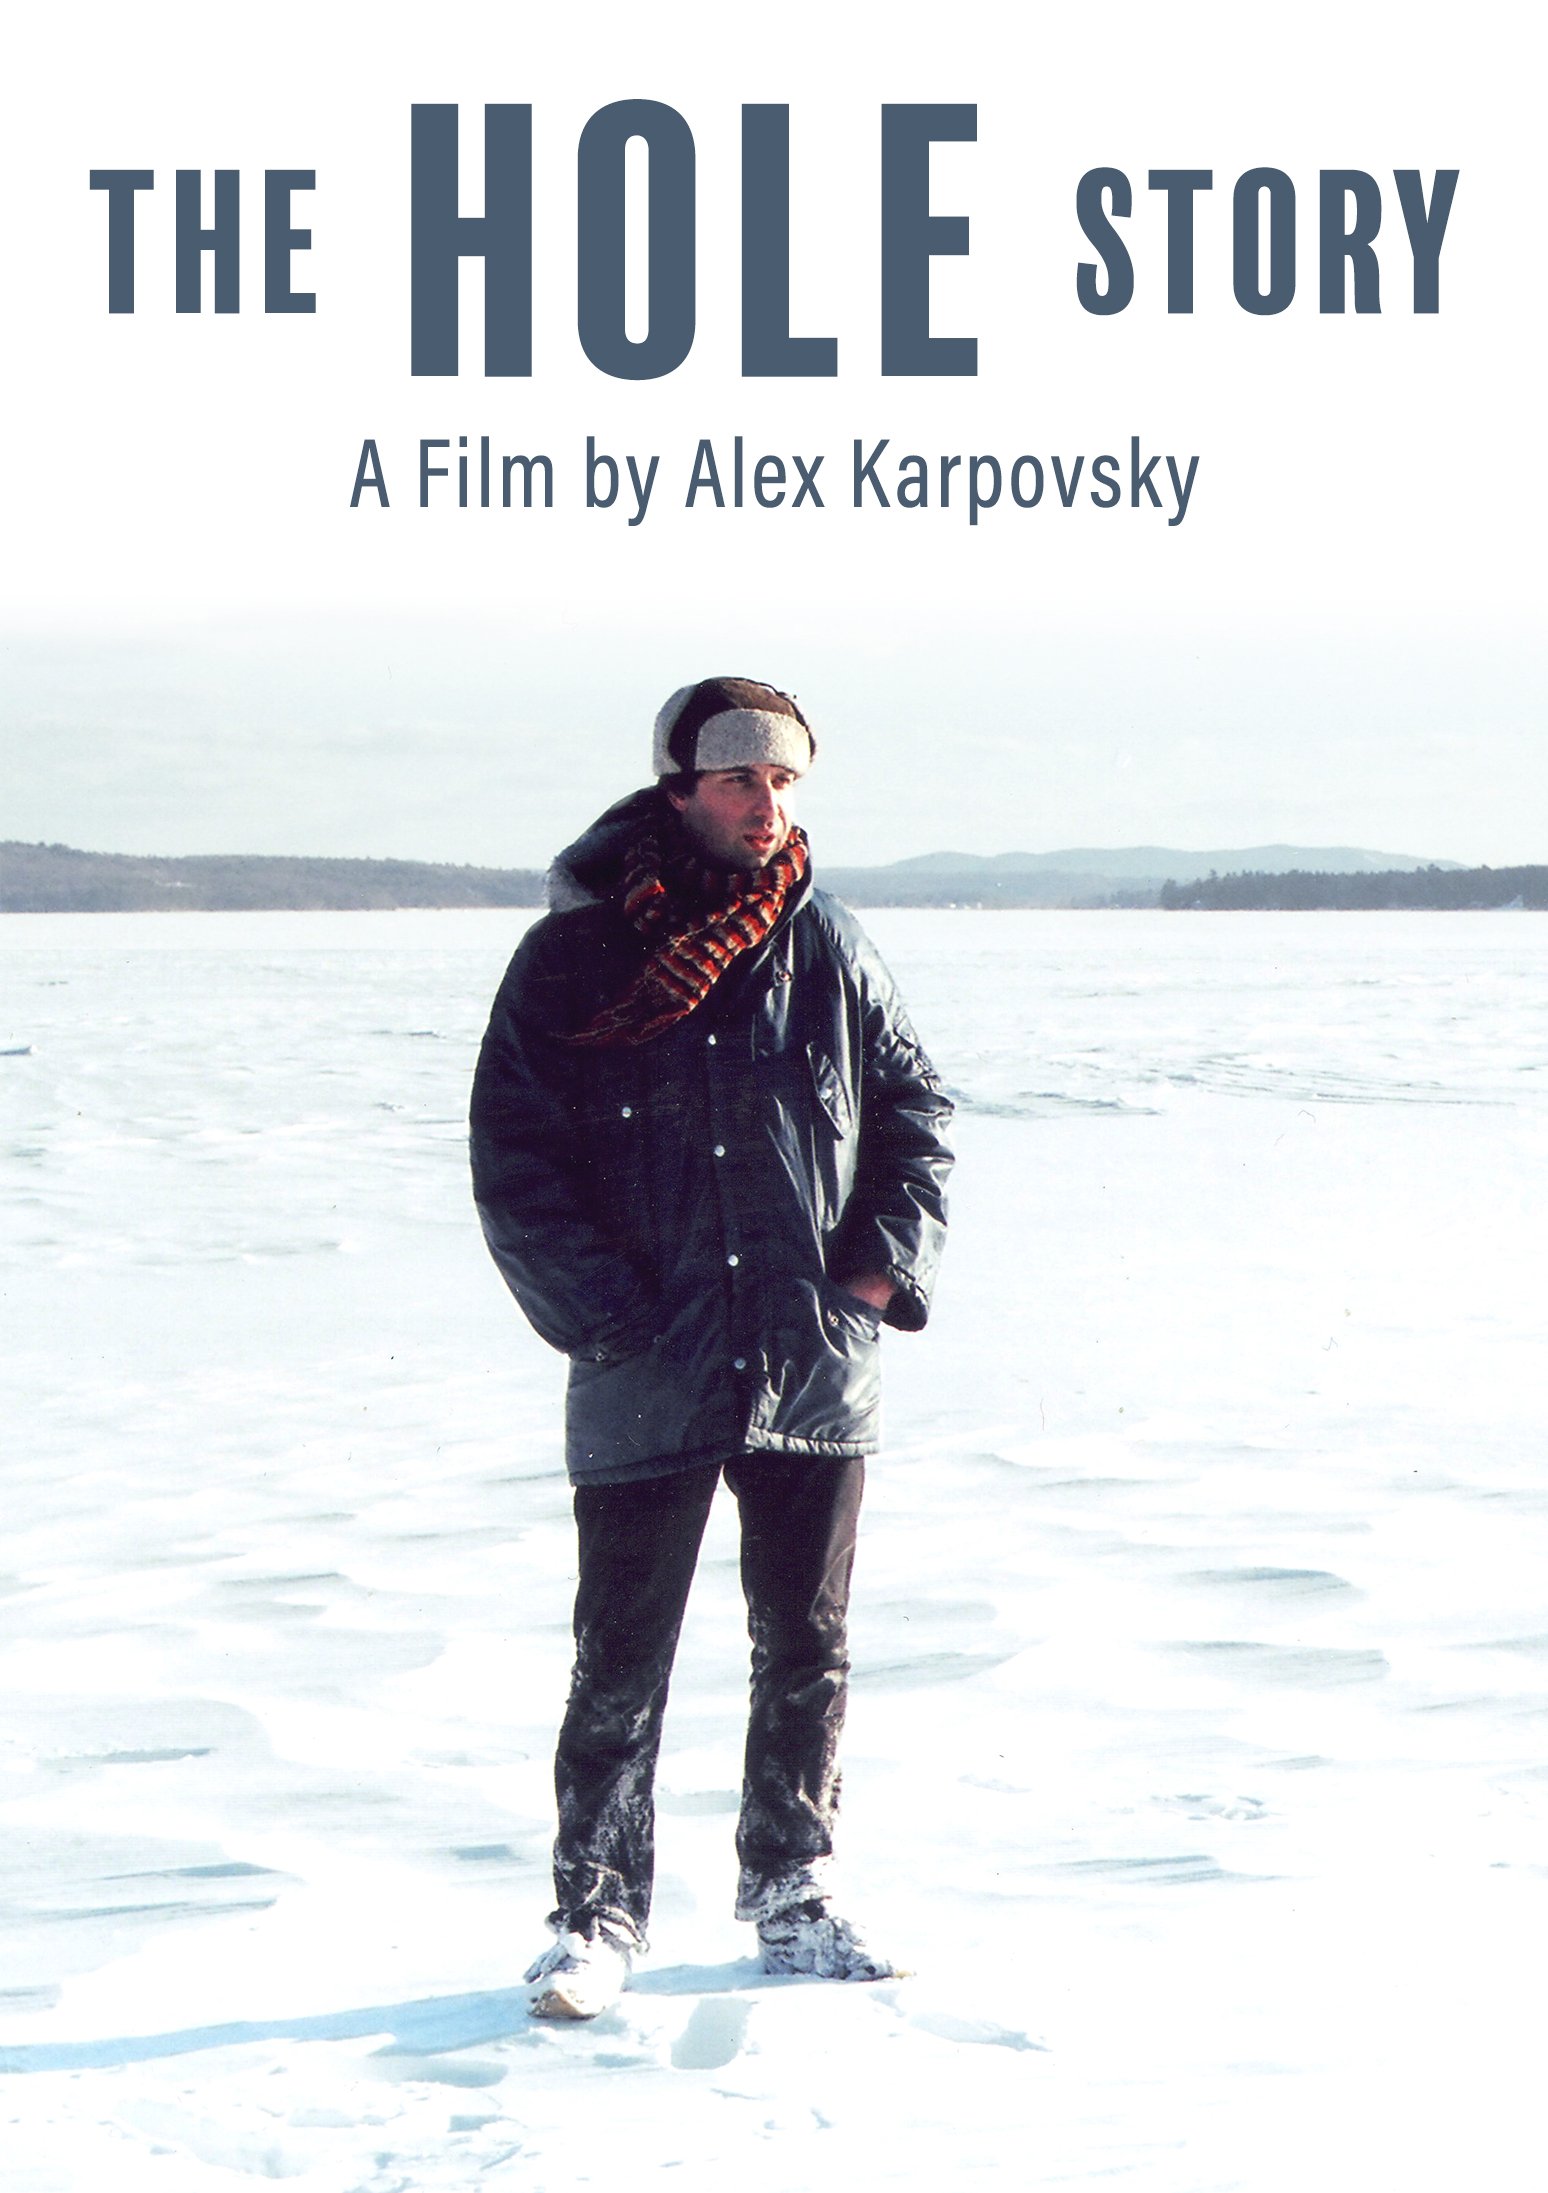 THE HOLE STORY /// ALEX KARPOVSKY